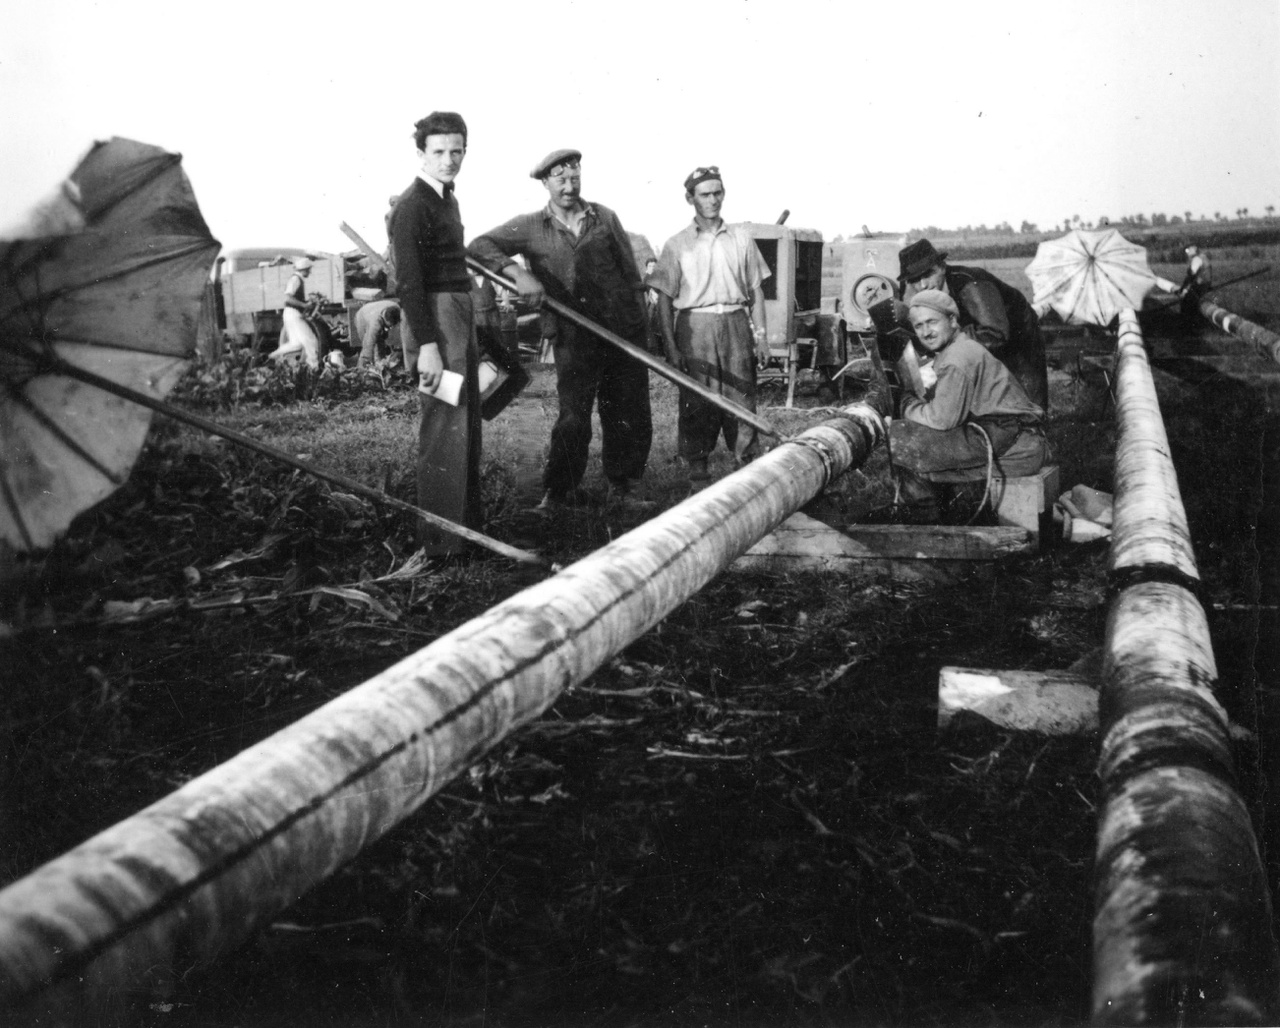 A zalai 8 colos kőolajvezeték építése: csőhegesztés.  A magyar gyártmányú acélcsőből készült „zalai 8 colos” vezeték az 1941-es átadását követő években 5 európai rekordot mondhatott magáénak. A leghosszabb szénhidrogén-vezeték volt (250 kilométer), saját szellemi forrásból katódvédelemmel látták el, Európában elsőként oldották meg a kőolaj és földgáz szakaszos célba juttatását az ún. „dugós szállítással”, teljes hosszában biztosított volt a belső tisztítás (görényezés), és légkábeles hírközléssel is rendelkezett. 